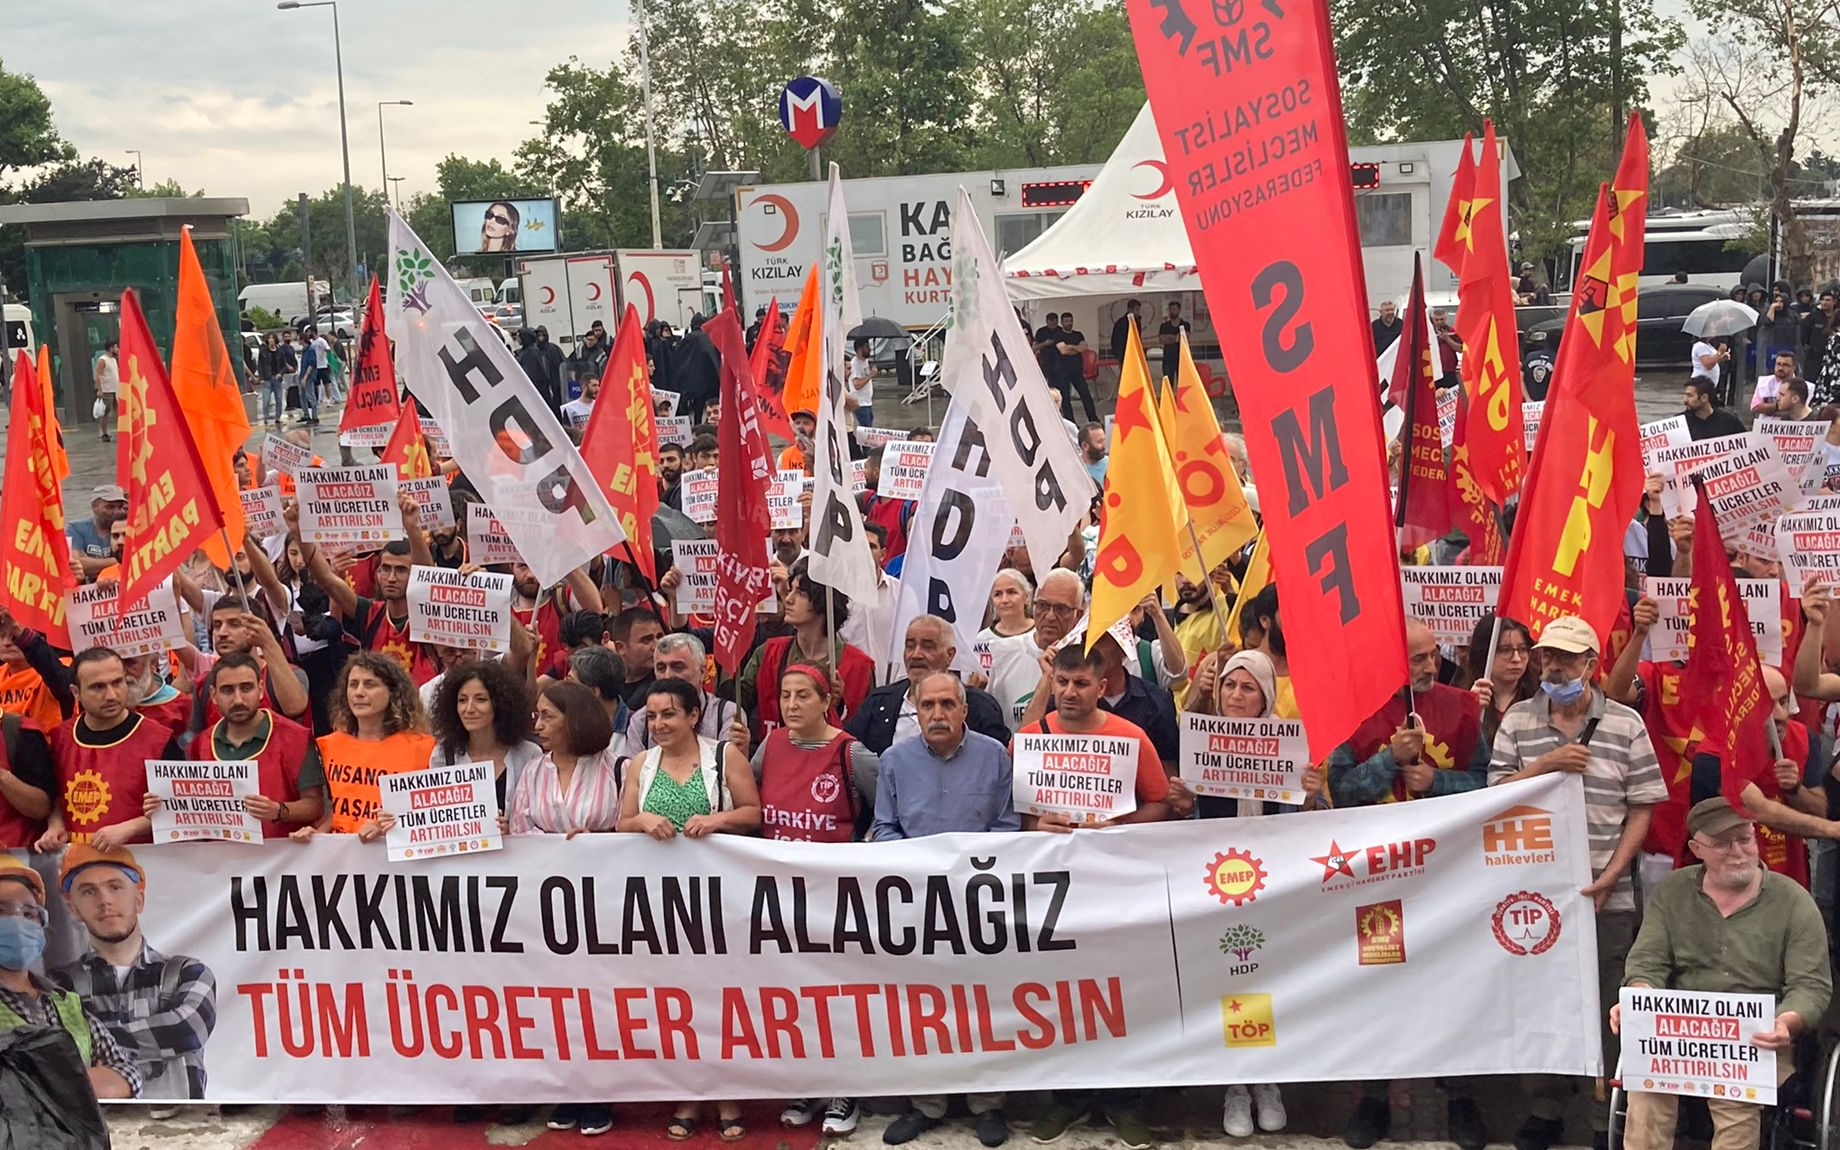 İstanbul’da eylem: “Hakkımız olanı alacağız!”